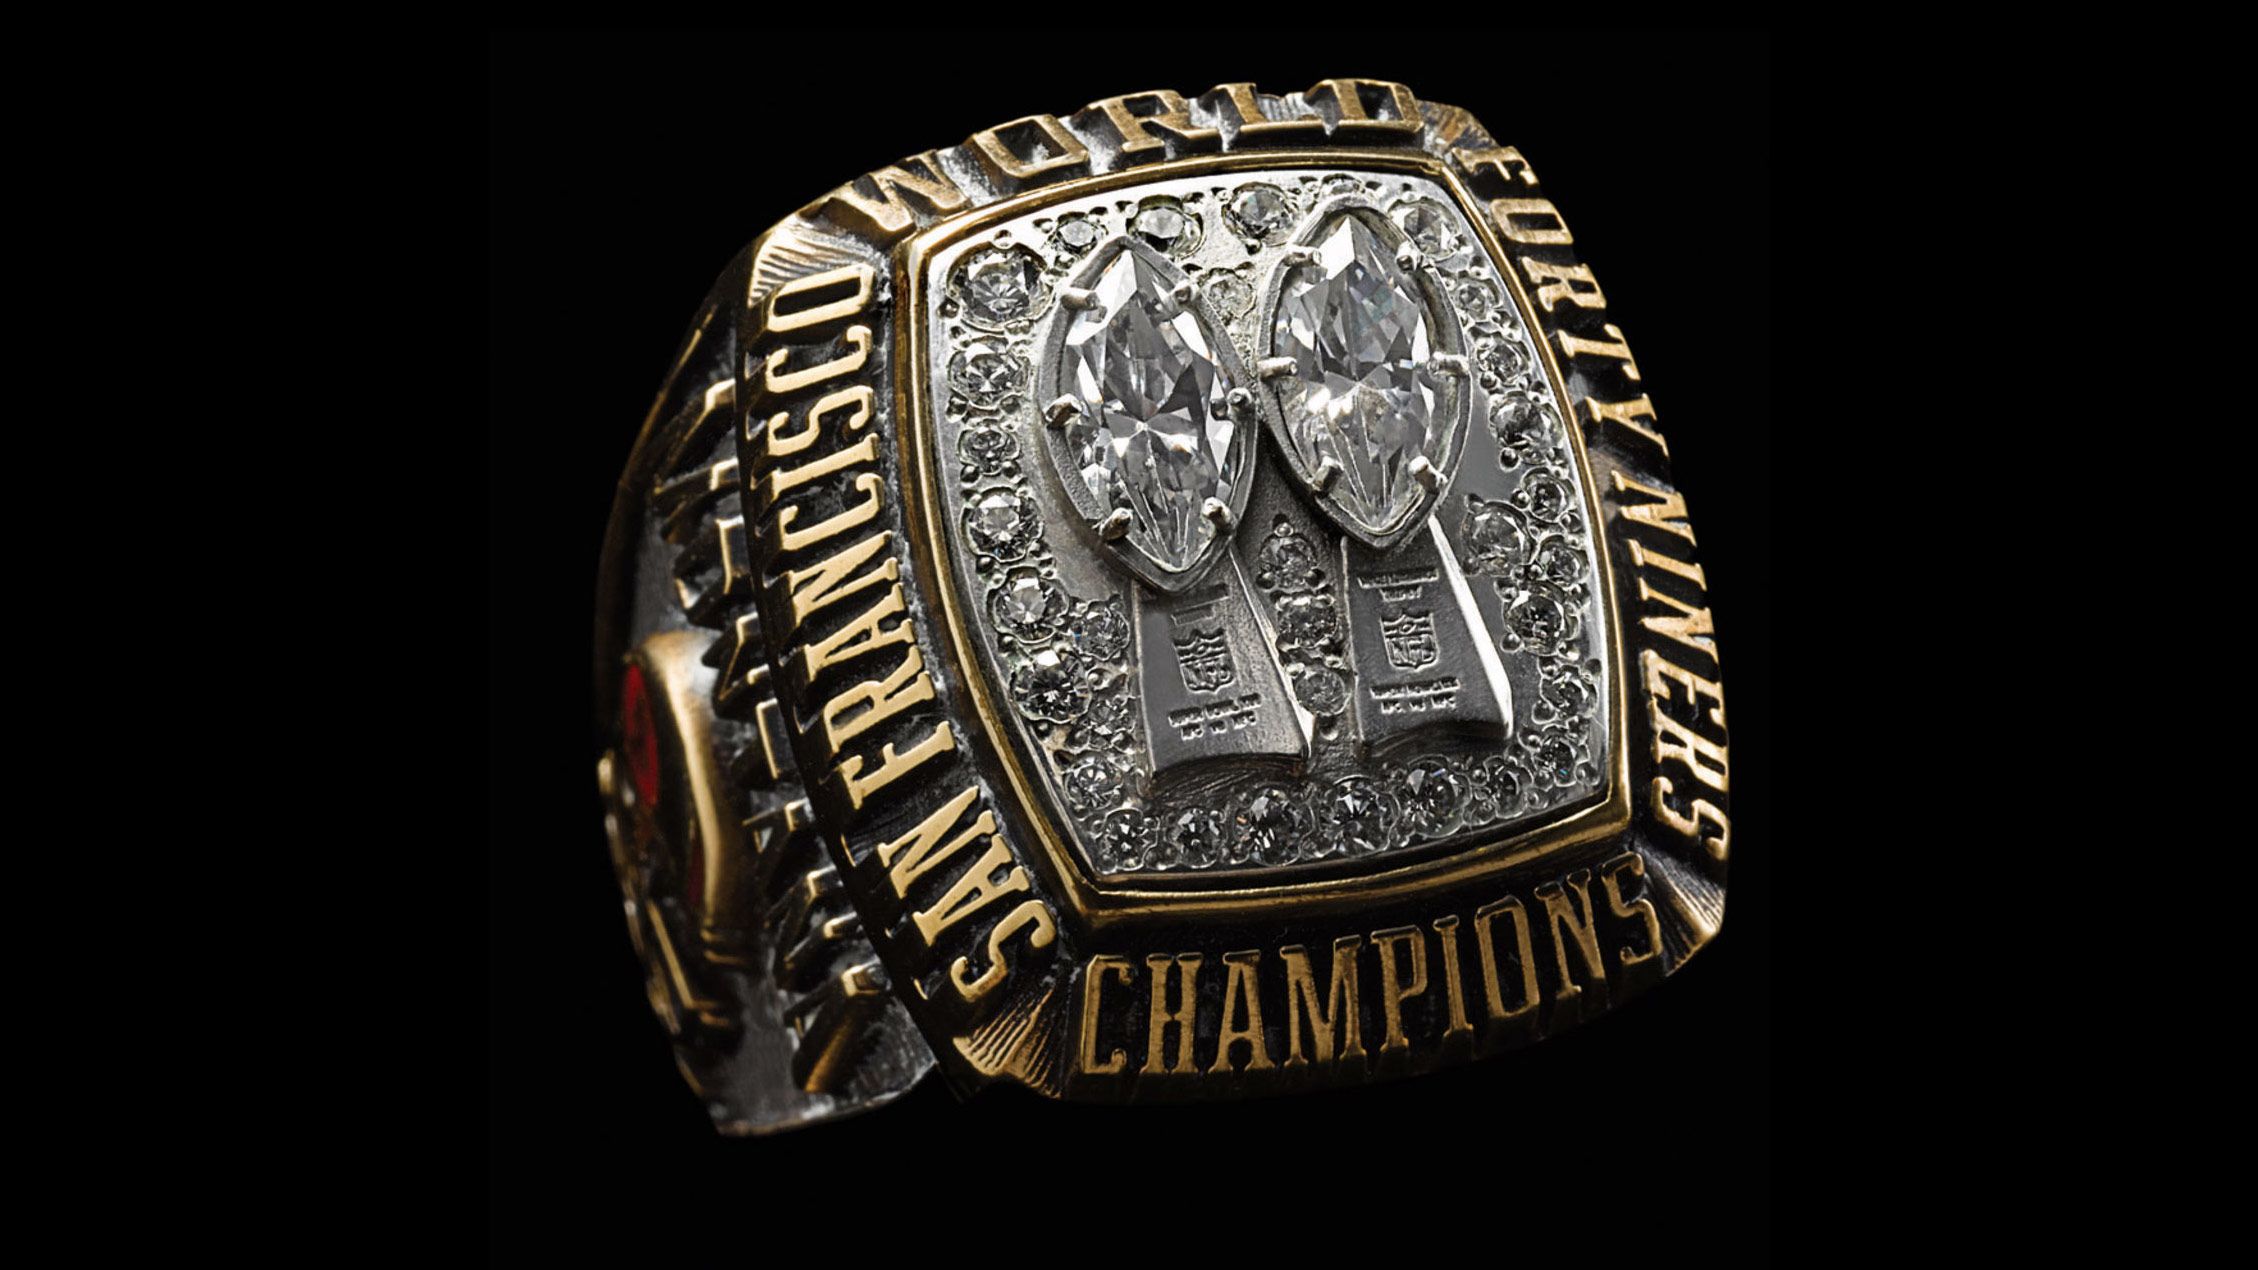 49ers super rings